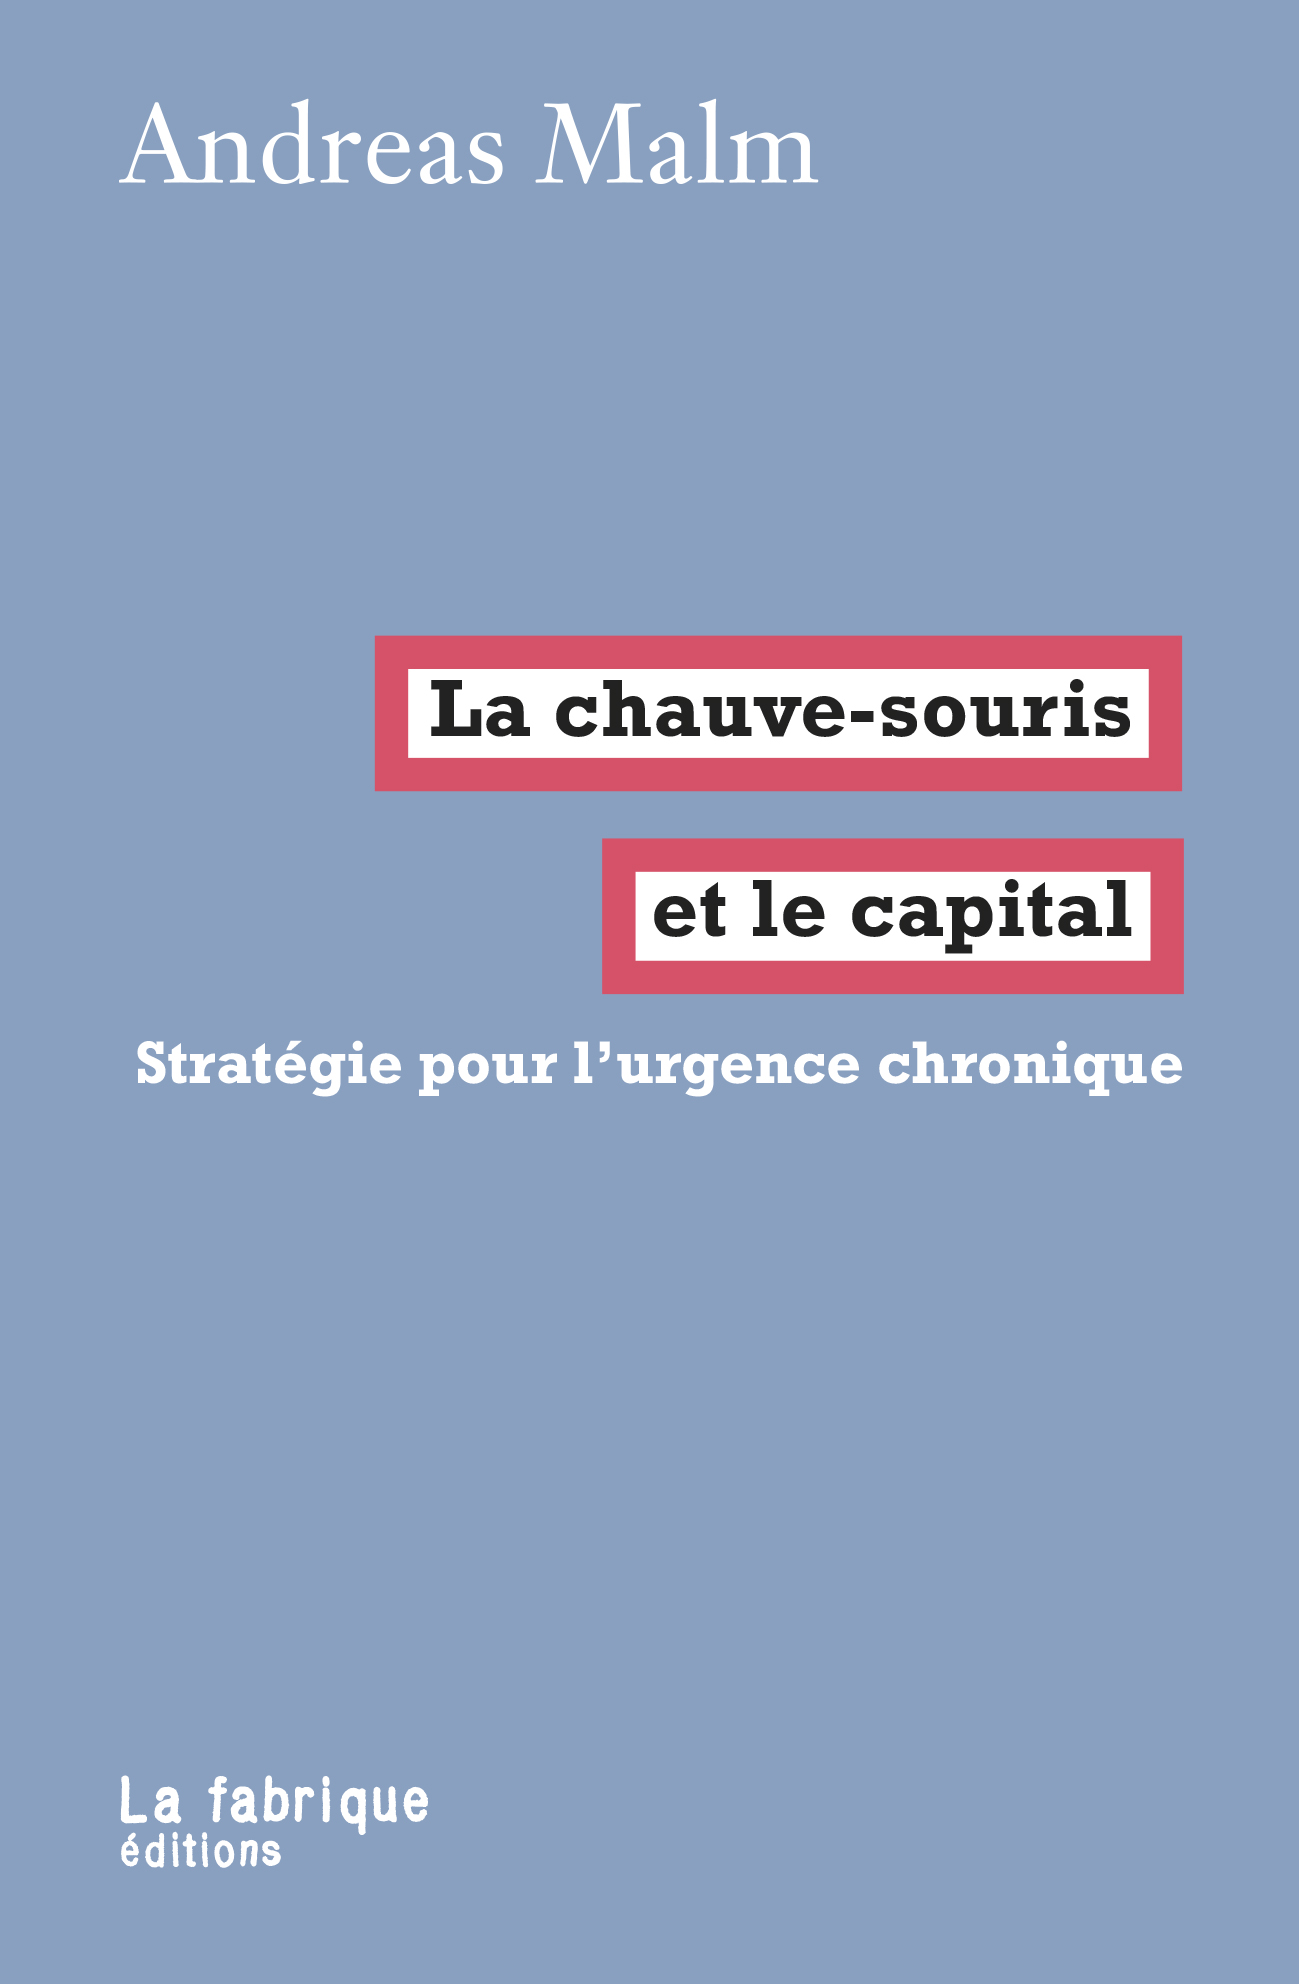 Malm Andreas. La chauve-souris et le capital : stratégie pour l’urgence chronique. Paris : La Fabrique. 2020.